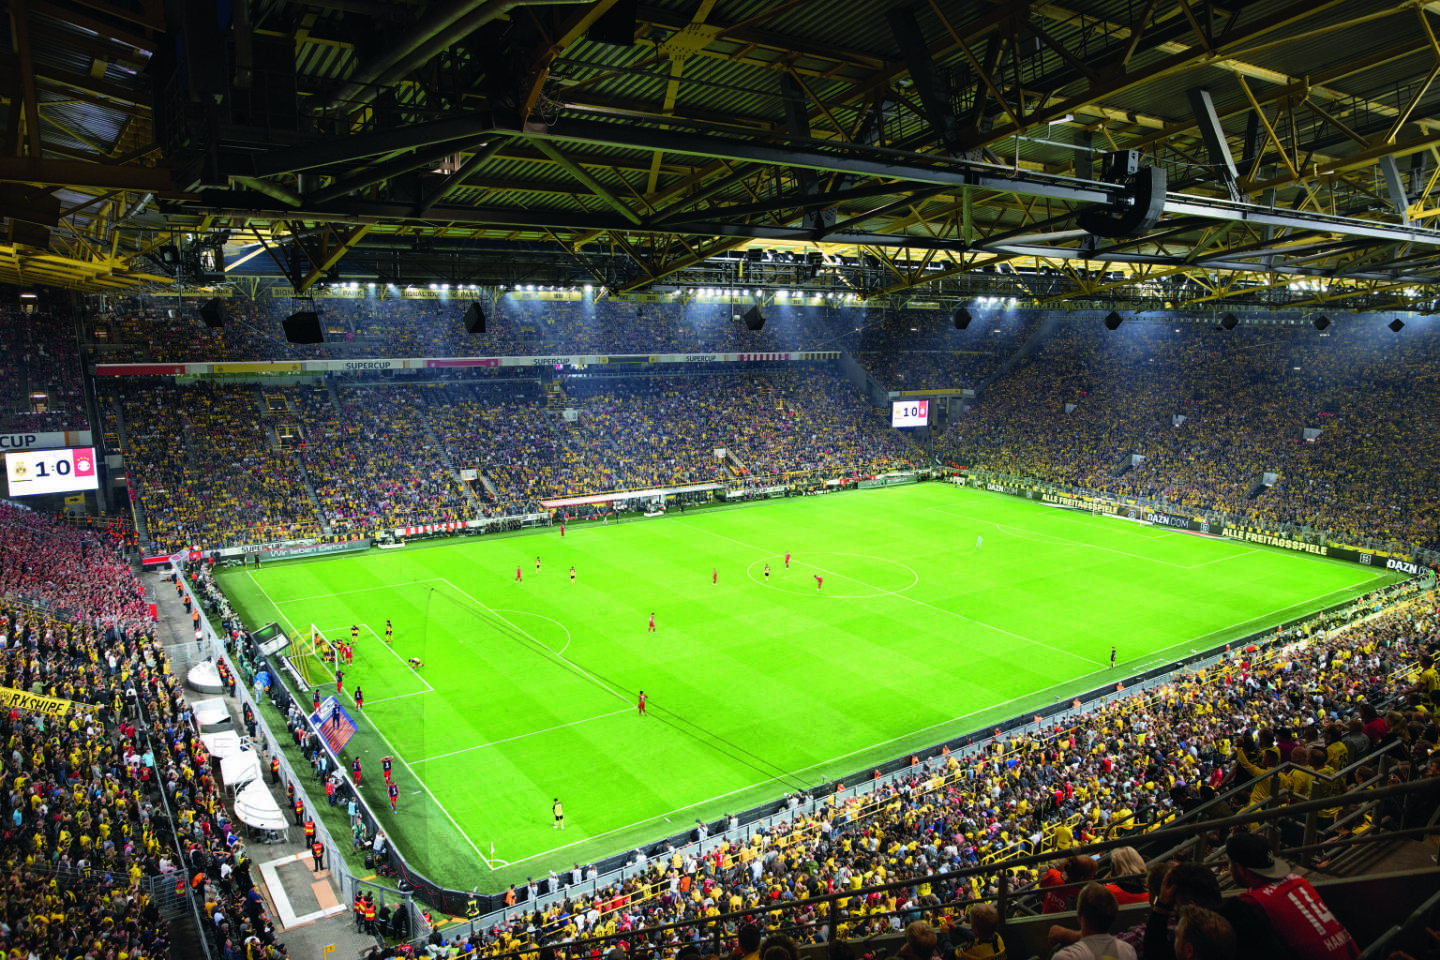 Die Zumtobel Group beleuchtet die Heimspielstätte von Borussia Dortmund; Credit: Marcel Mayer